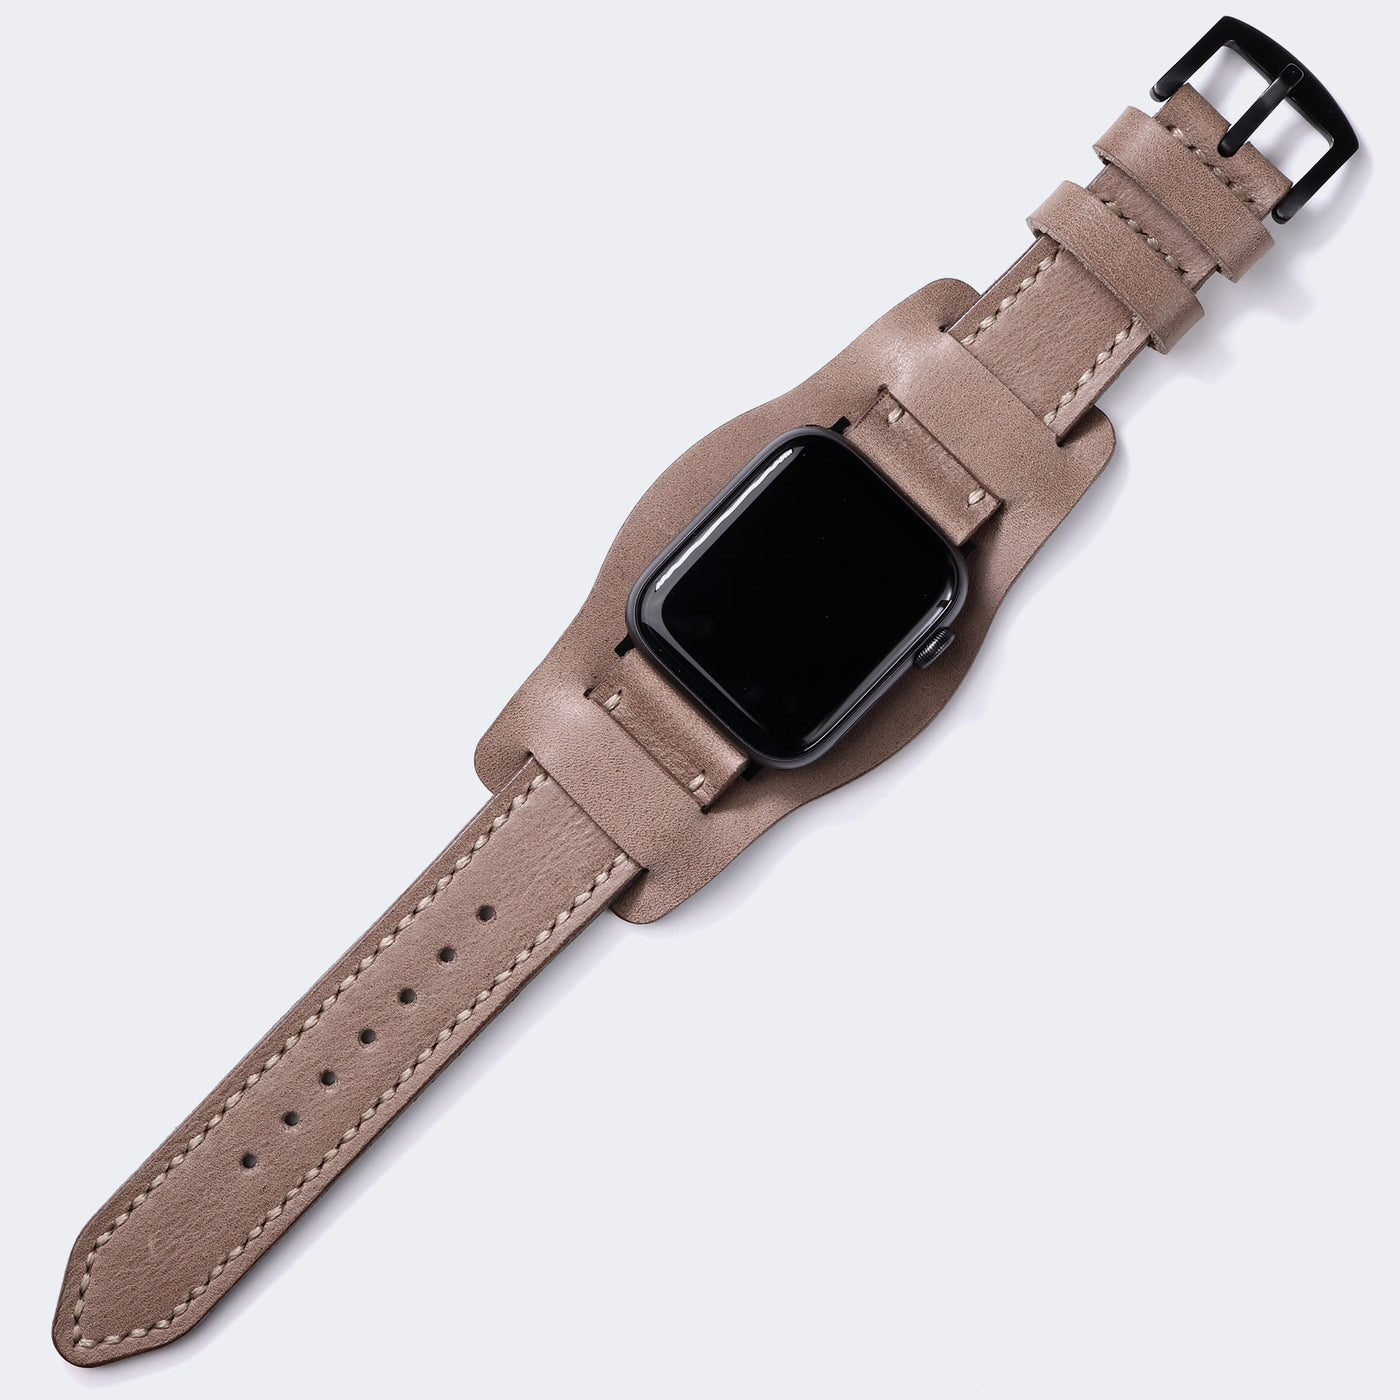 Custom Made Apple Watch Bund Strap - Dark Beige